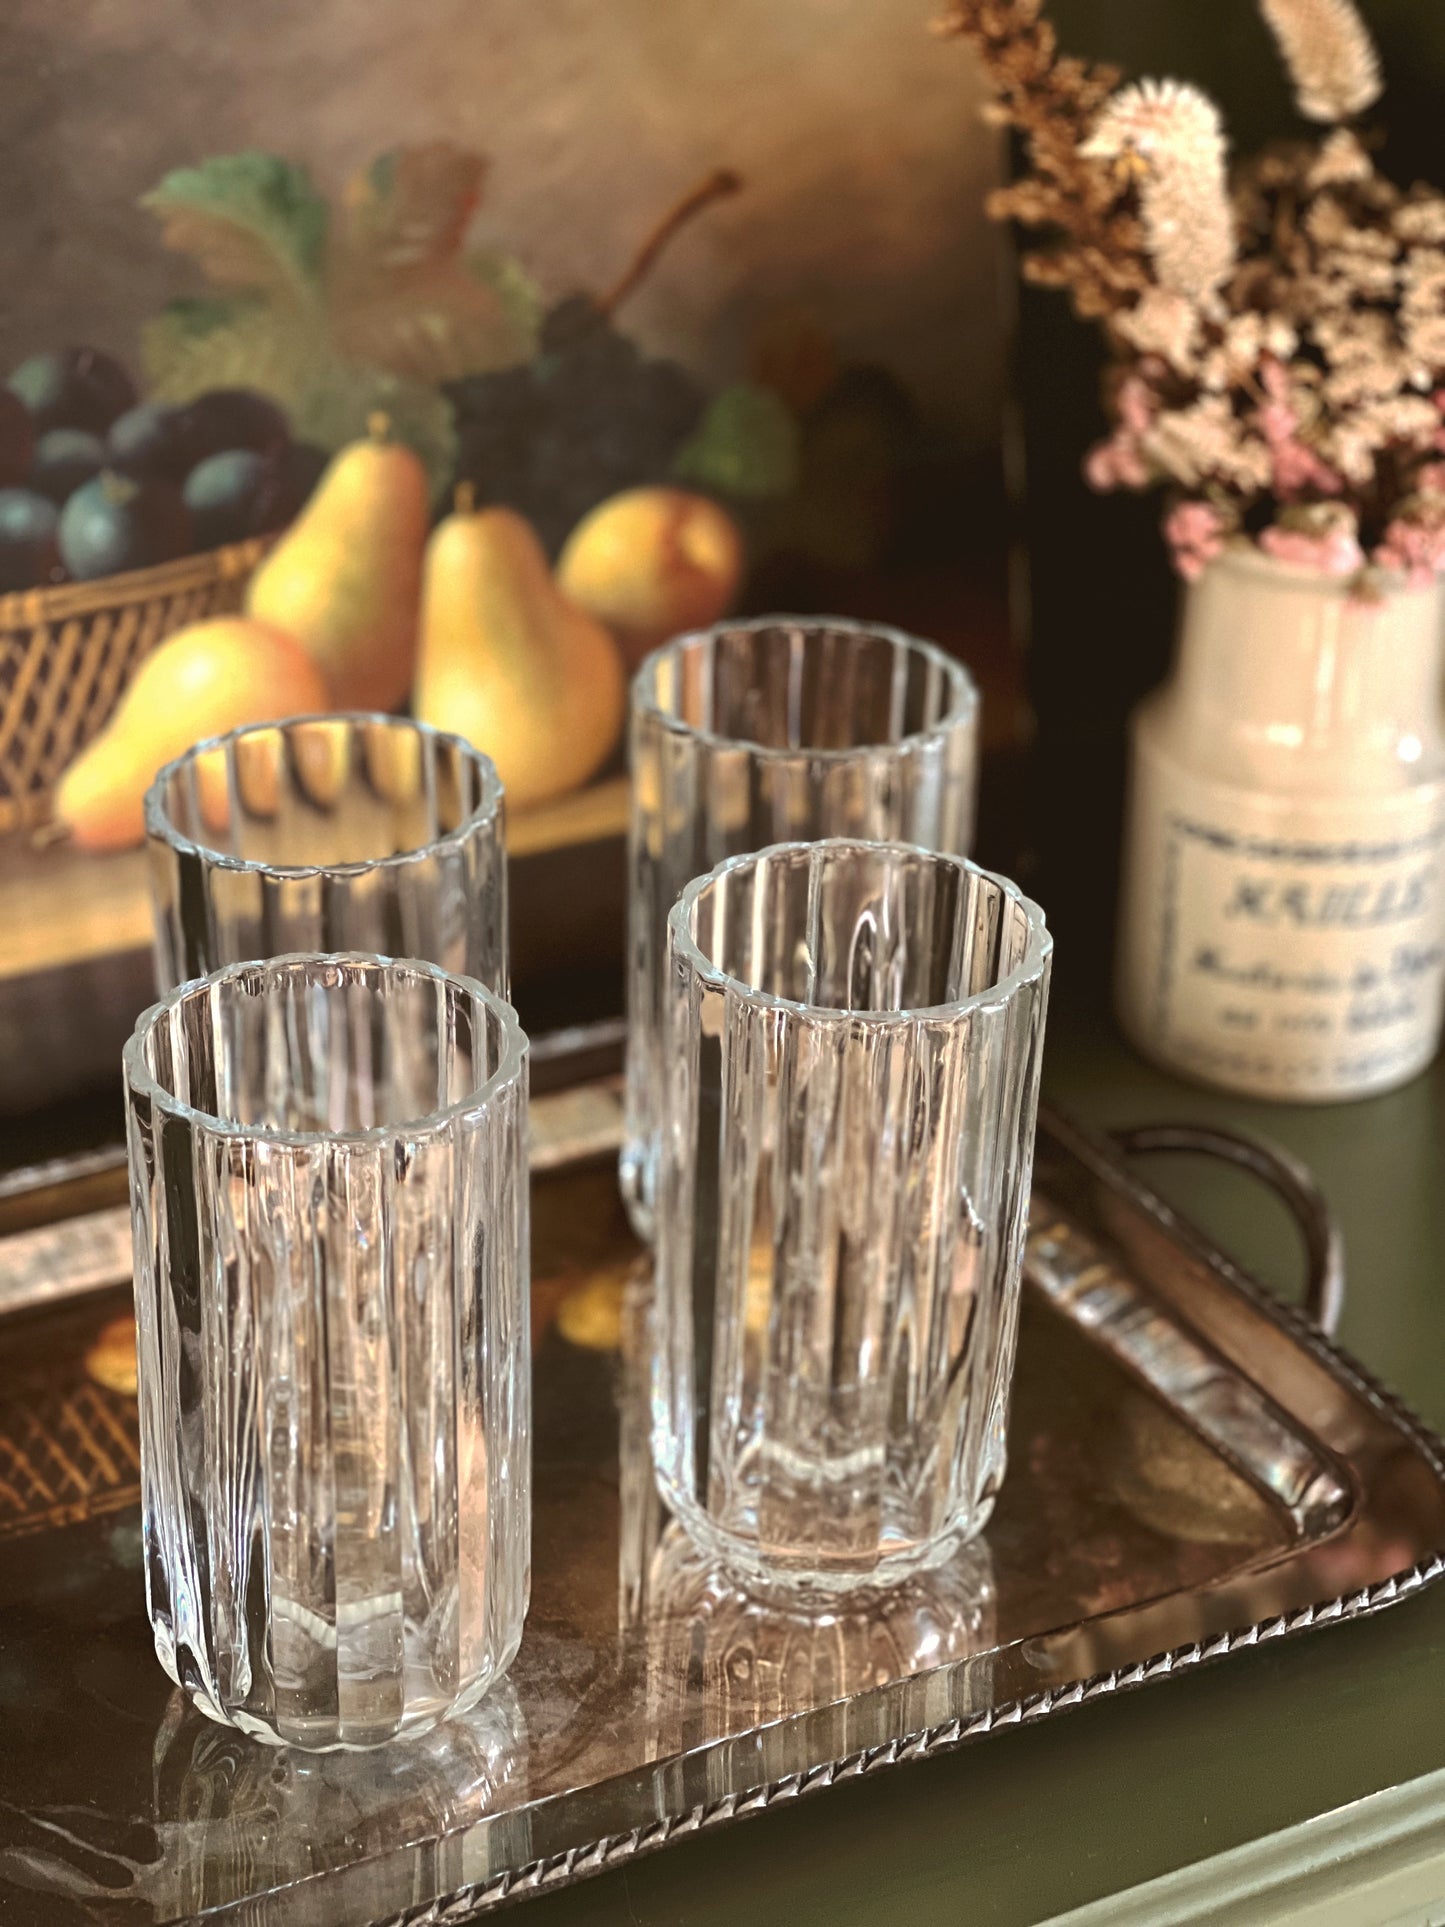 Set of 4 Ruffled Glass Highball Glasses